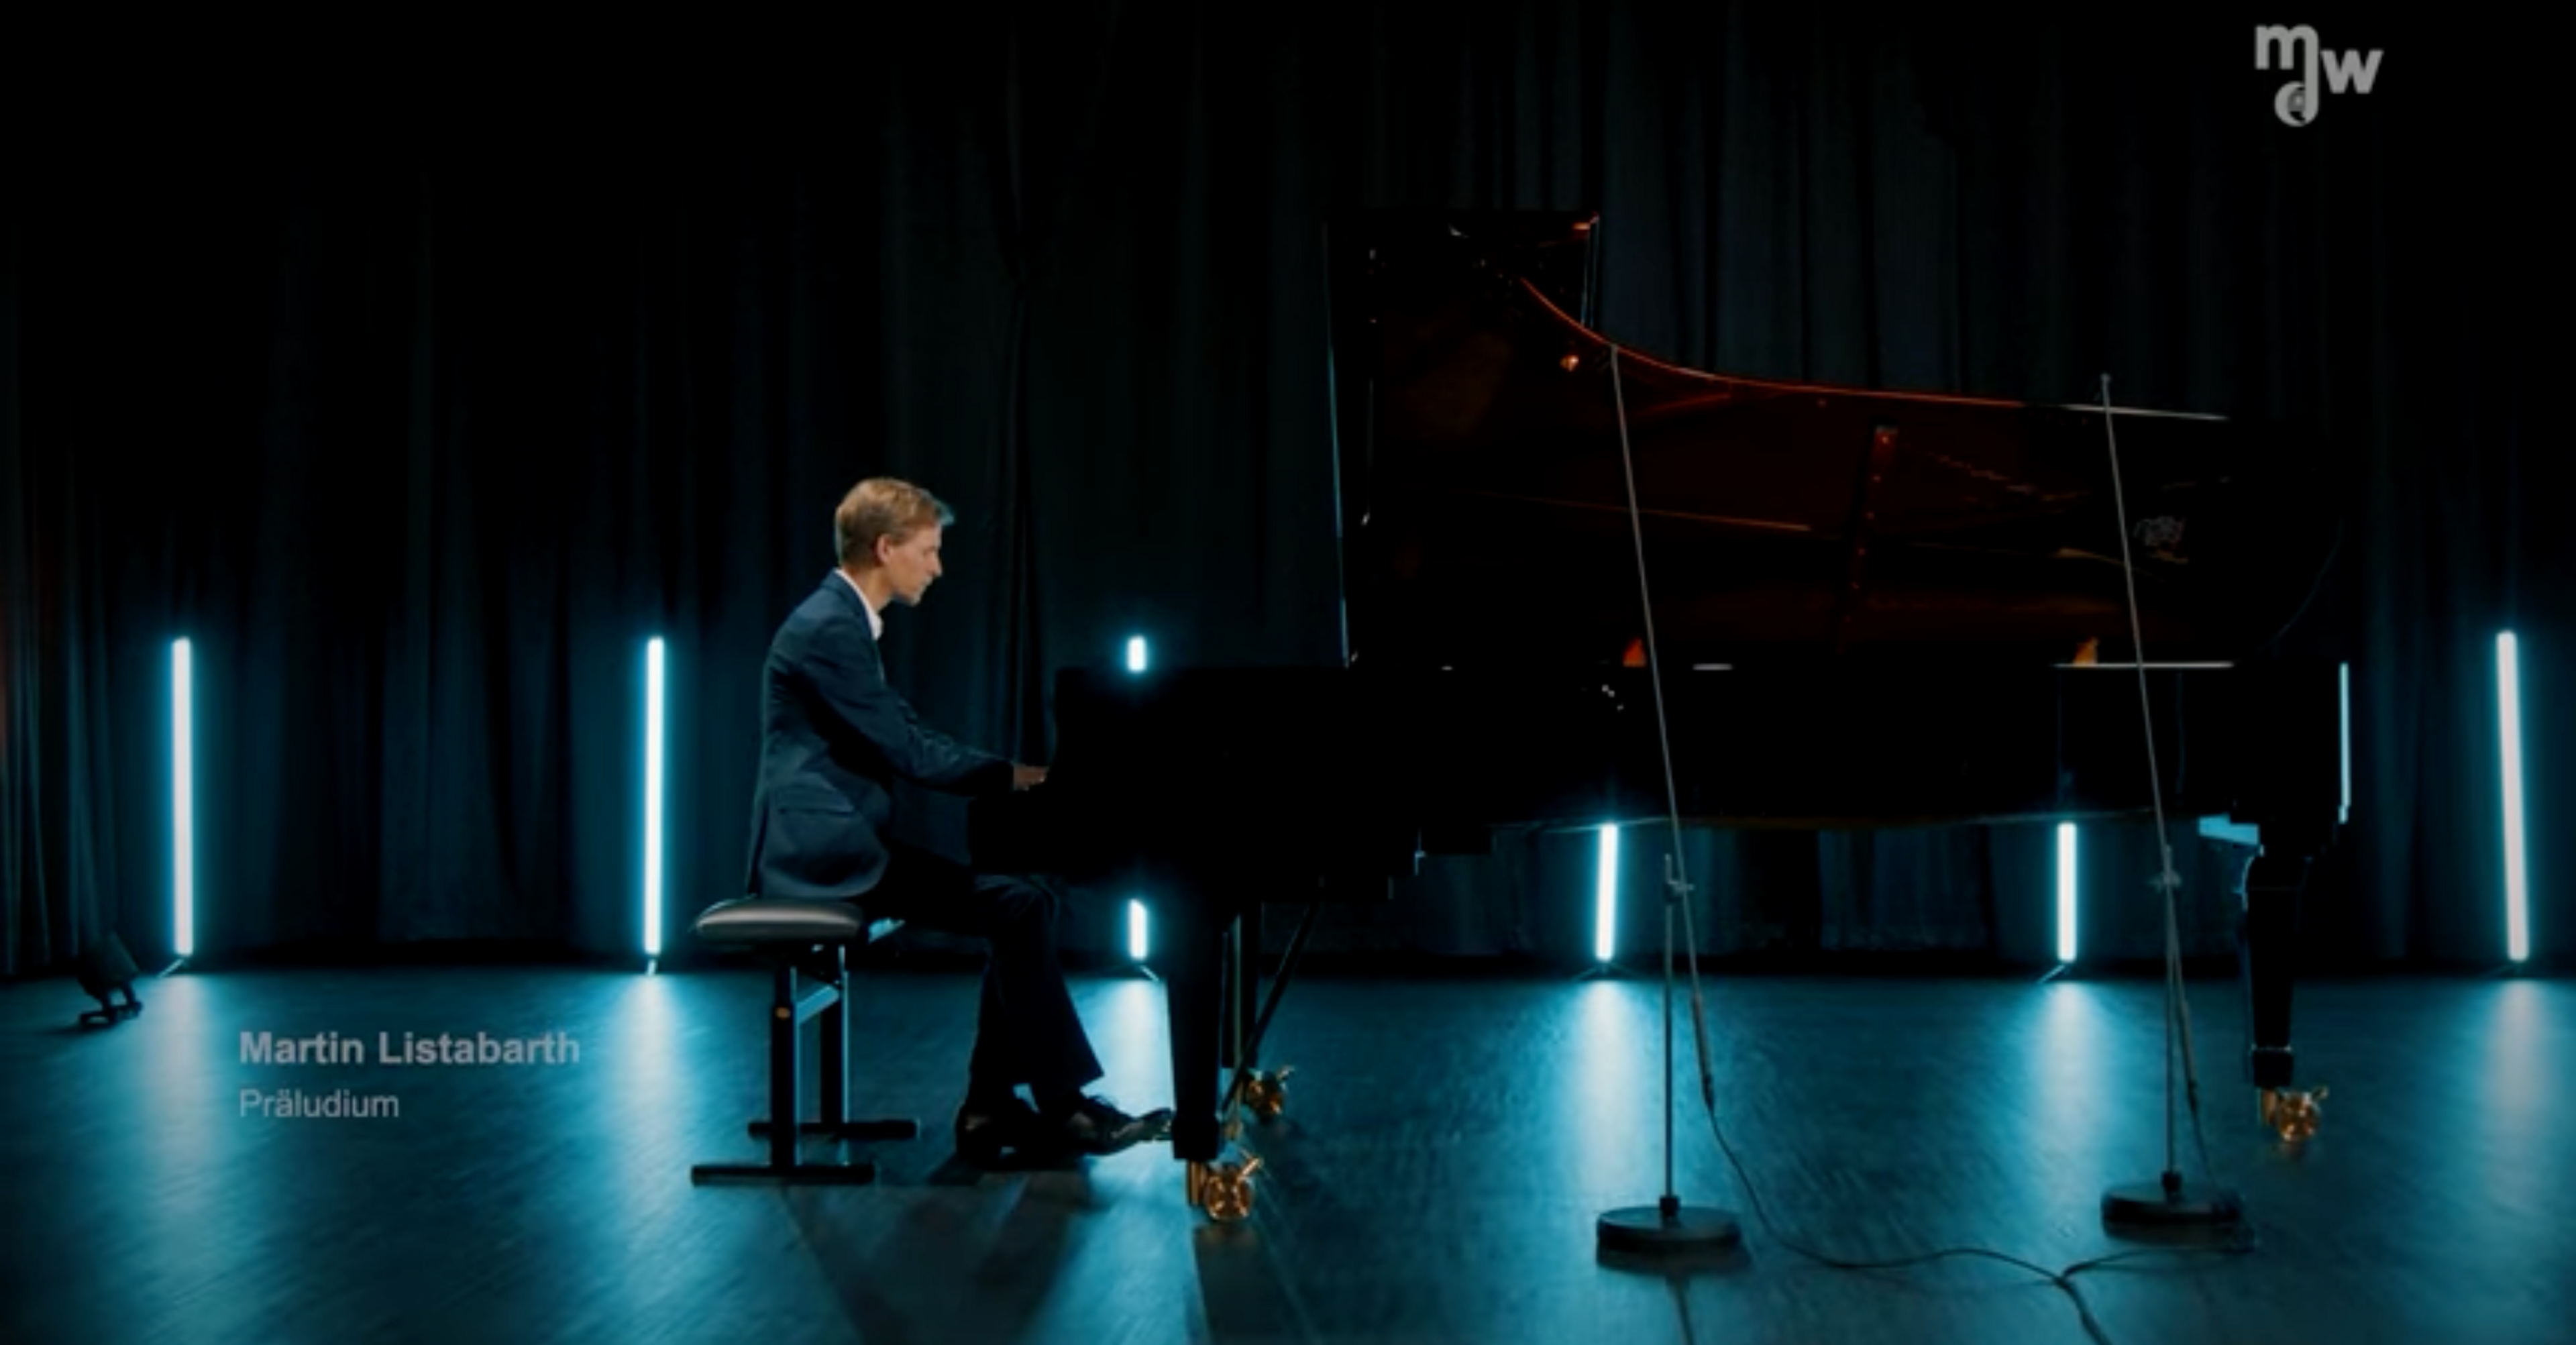 Martin Listabarth spielt am Klavier in einem dunklen, mit bläulichen Scheinwerfern beleuchteten, Tonstudio.